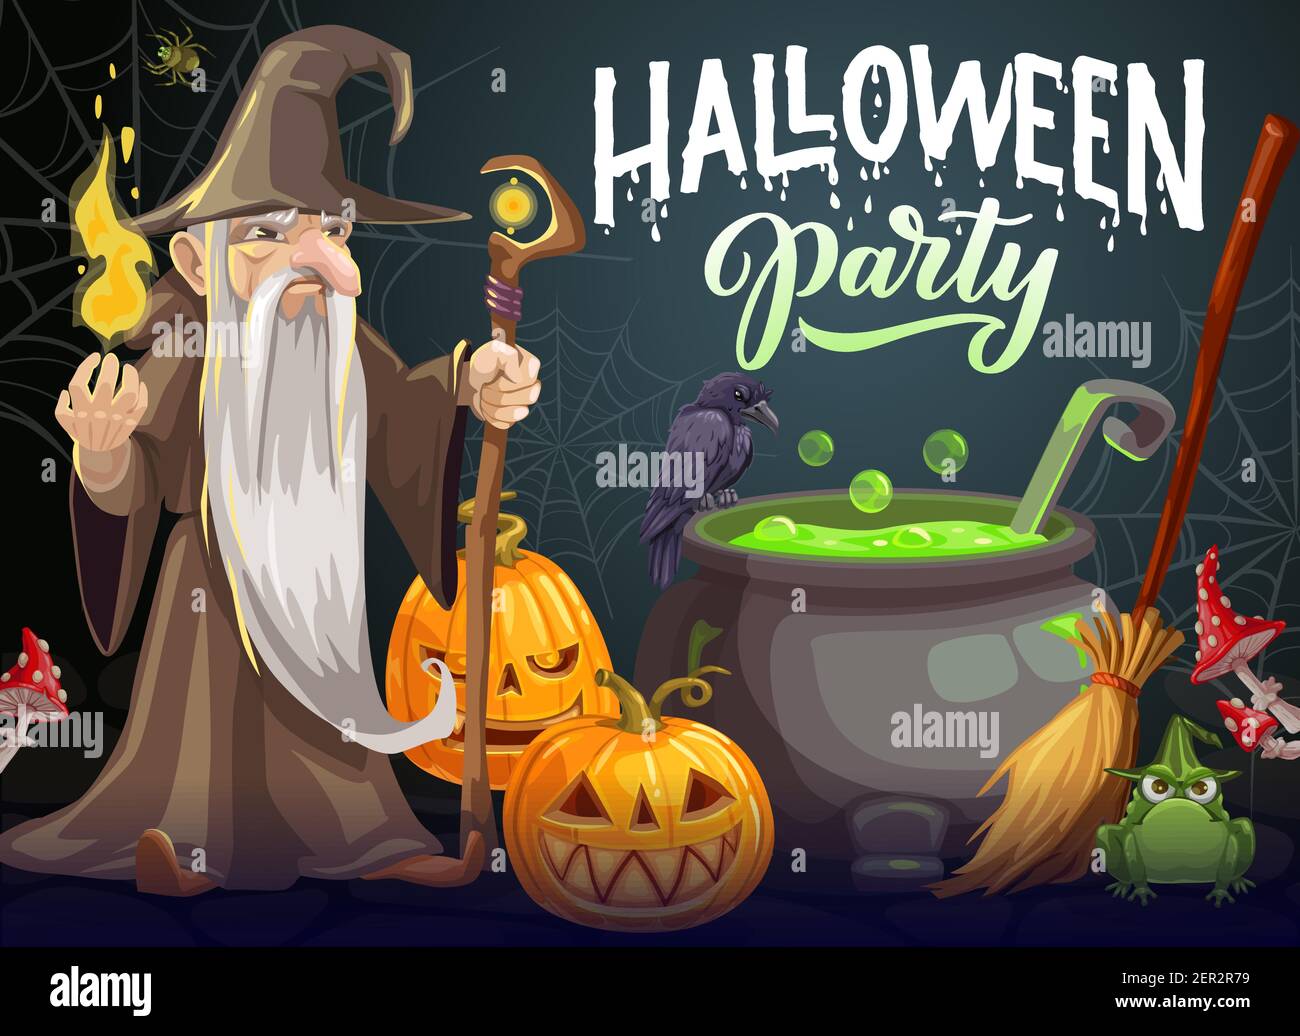 Halloween Party Cartoon Vektor Poster. Zauberer mit langem weißen Bart, Kleid und Hut halten magischen Stab und Feuer in der Nähe Kessel mit grünem Trank. Halloween Stock Vektor